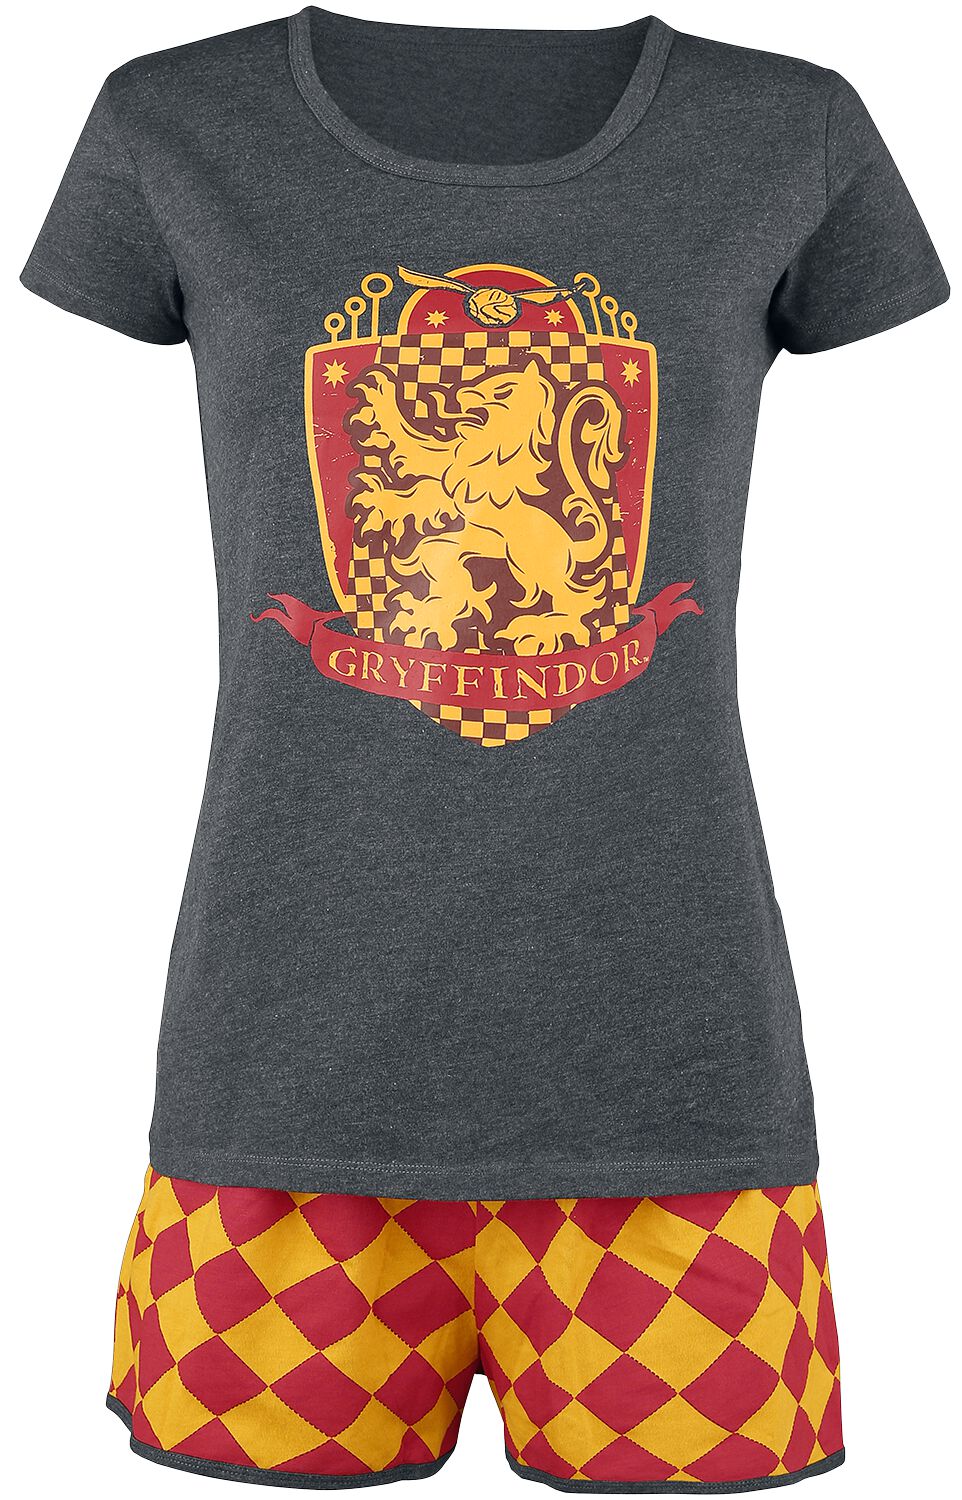 Harry Potter Schlafanzug - Gryffindor Quidditch - XS bis 5XL - für Damen - Größe L - grau/rot/gelb  - EMP exklusives Merchandise!